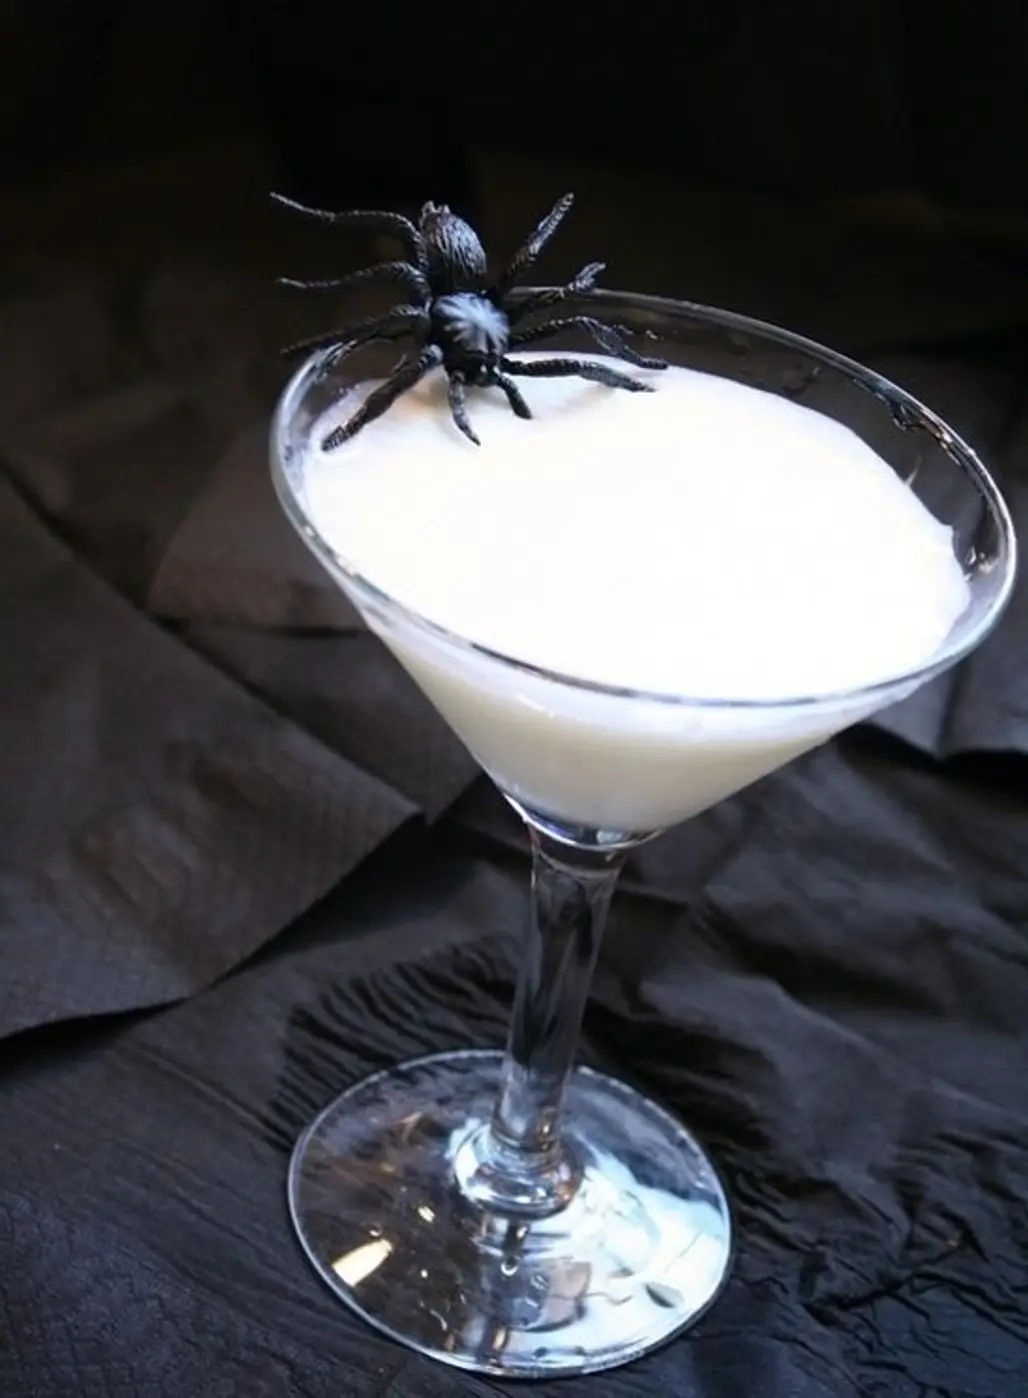 White Spider